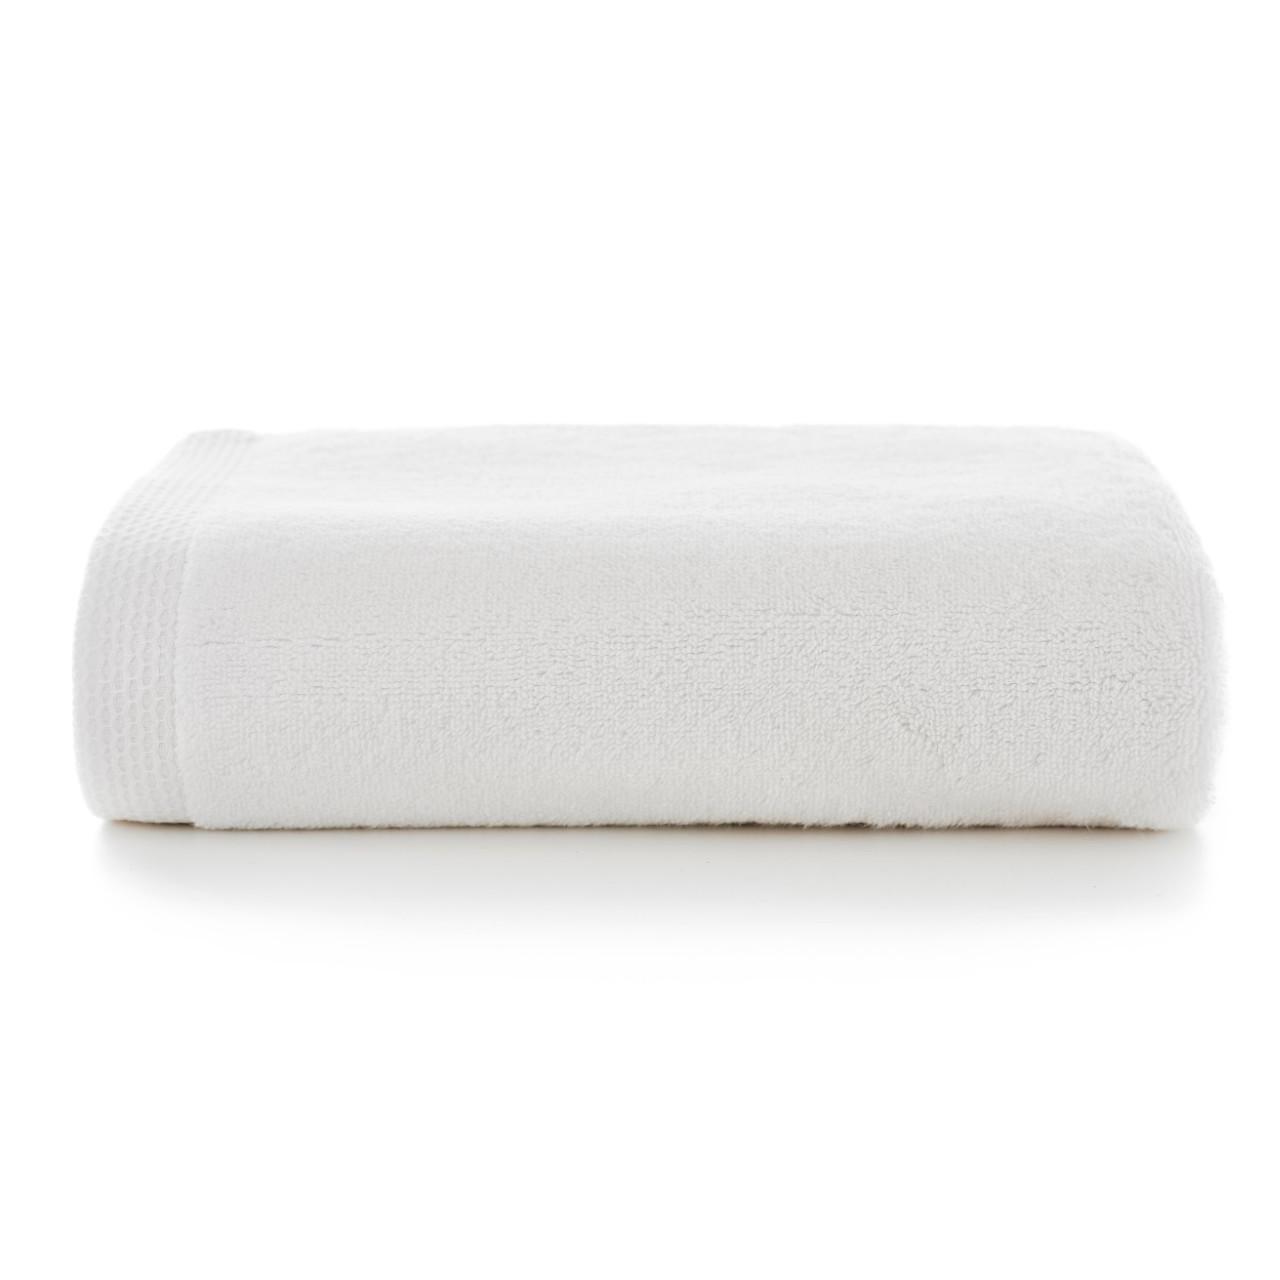 100% Cotton Egyptian Spa Bath Towel, White